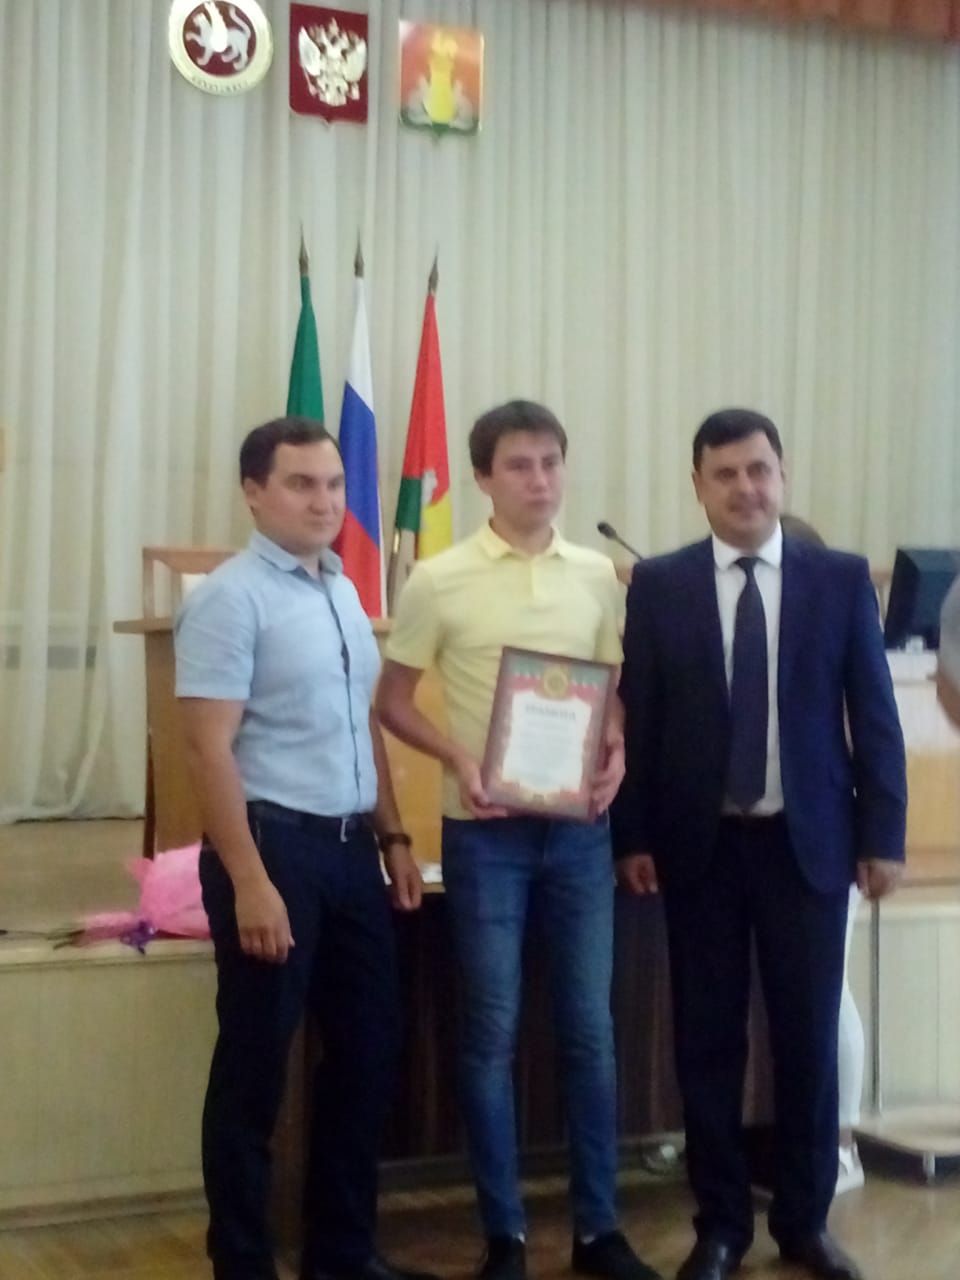 Физкультурники Пестречинского района получили заслуженные награды и грамоты